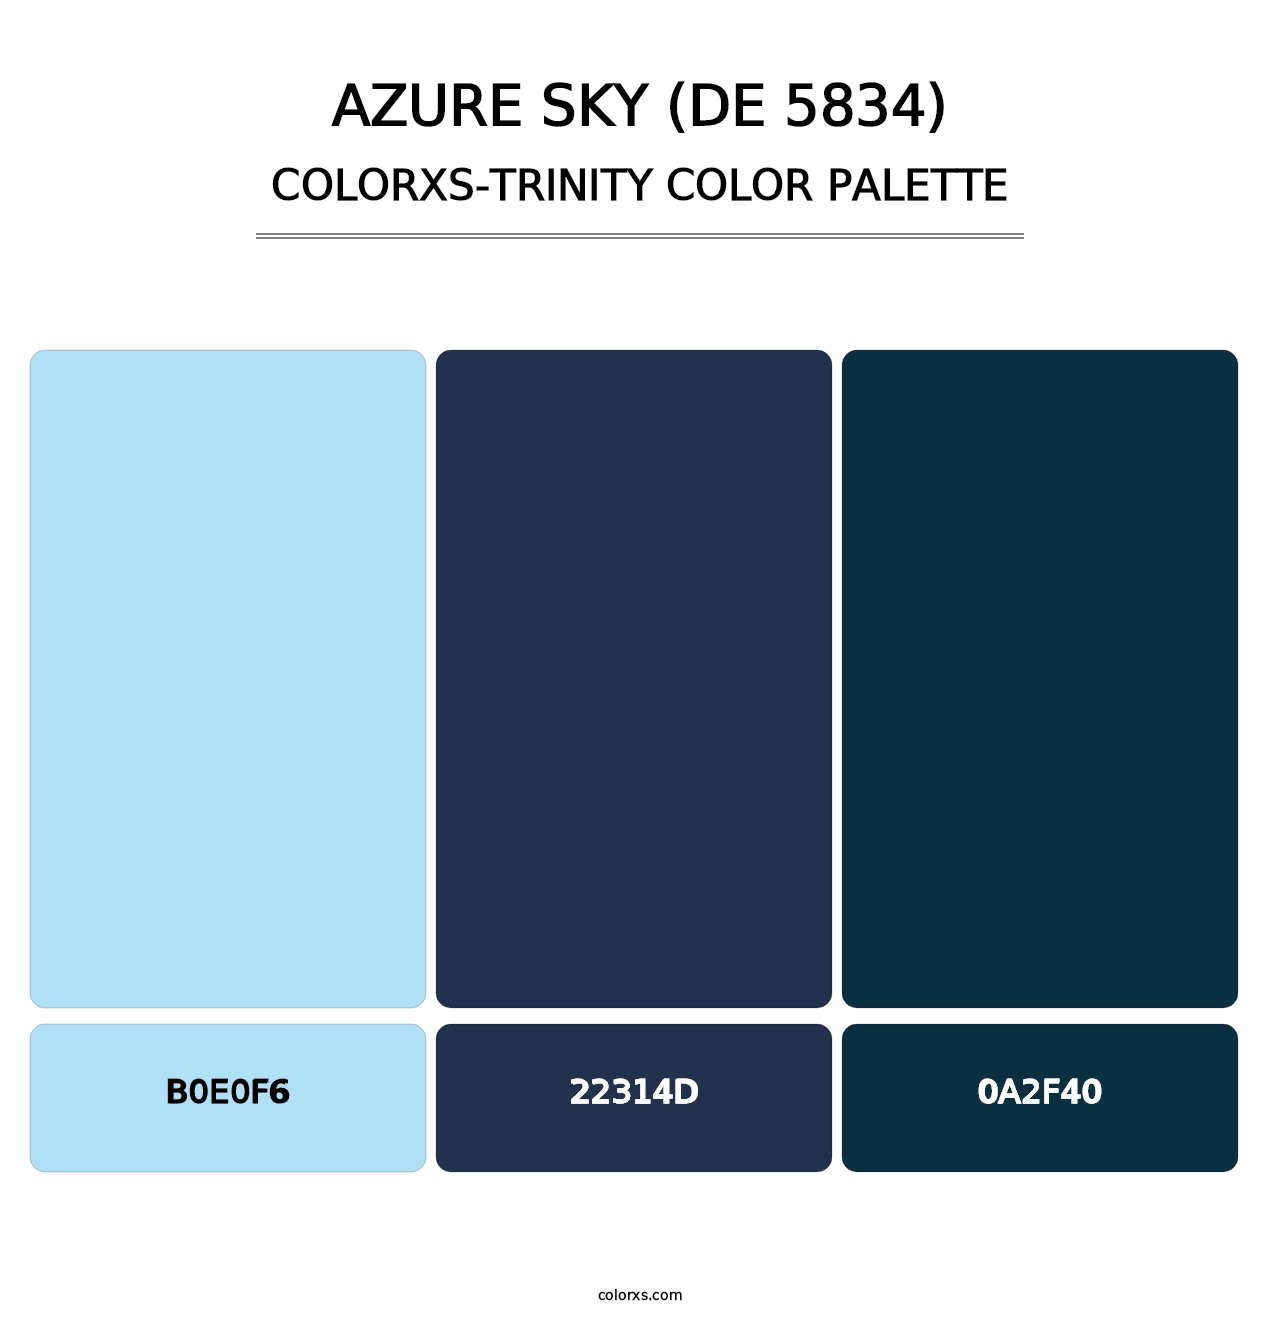 Azure Sky (DE 5834) - Colorxs Trinity Palette